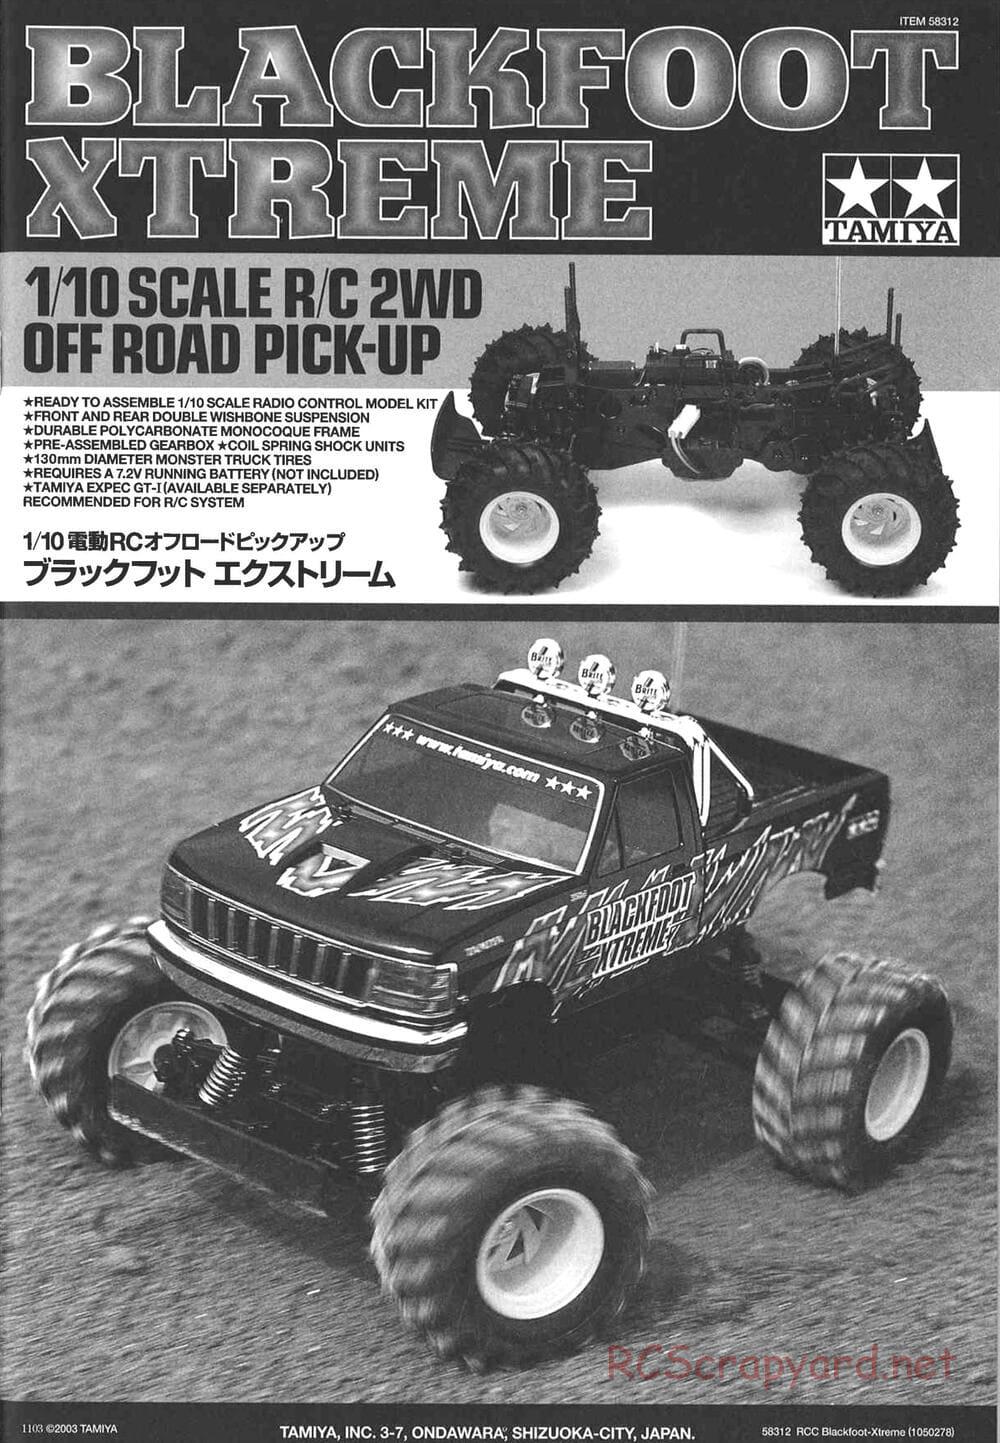 Tamiya - Blackfoot Xtreme - WT-01 Chassis - Manual - Page 1